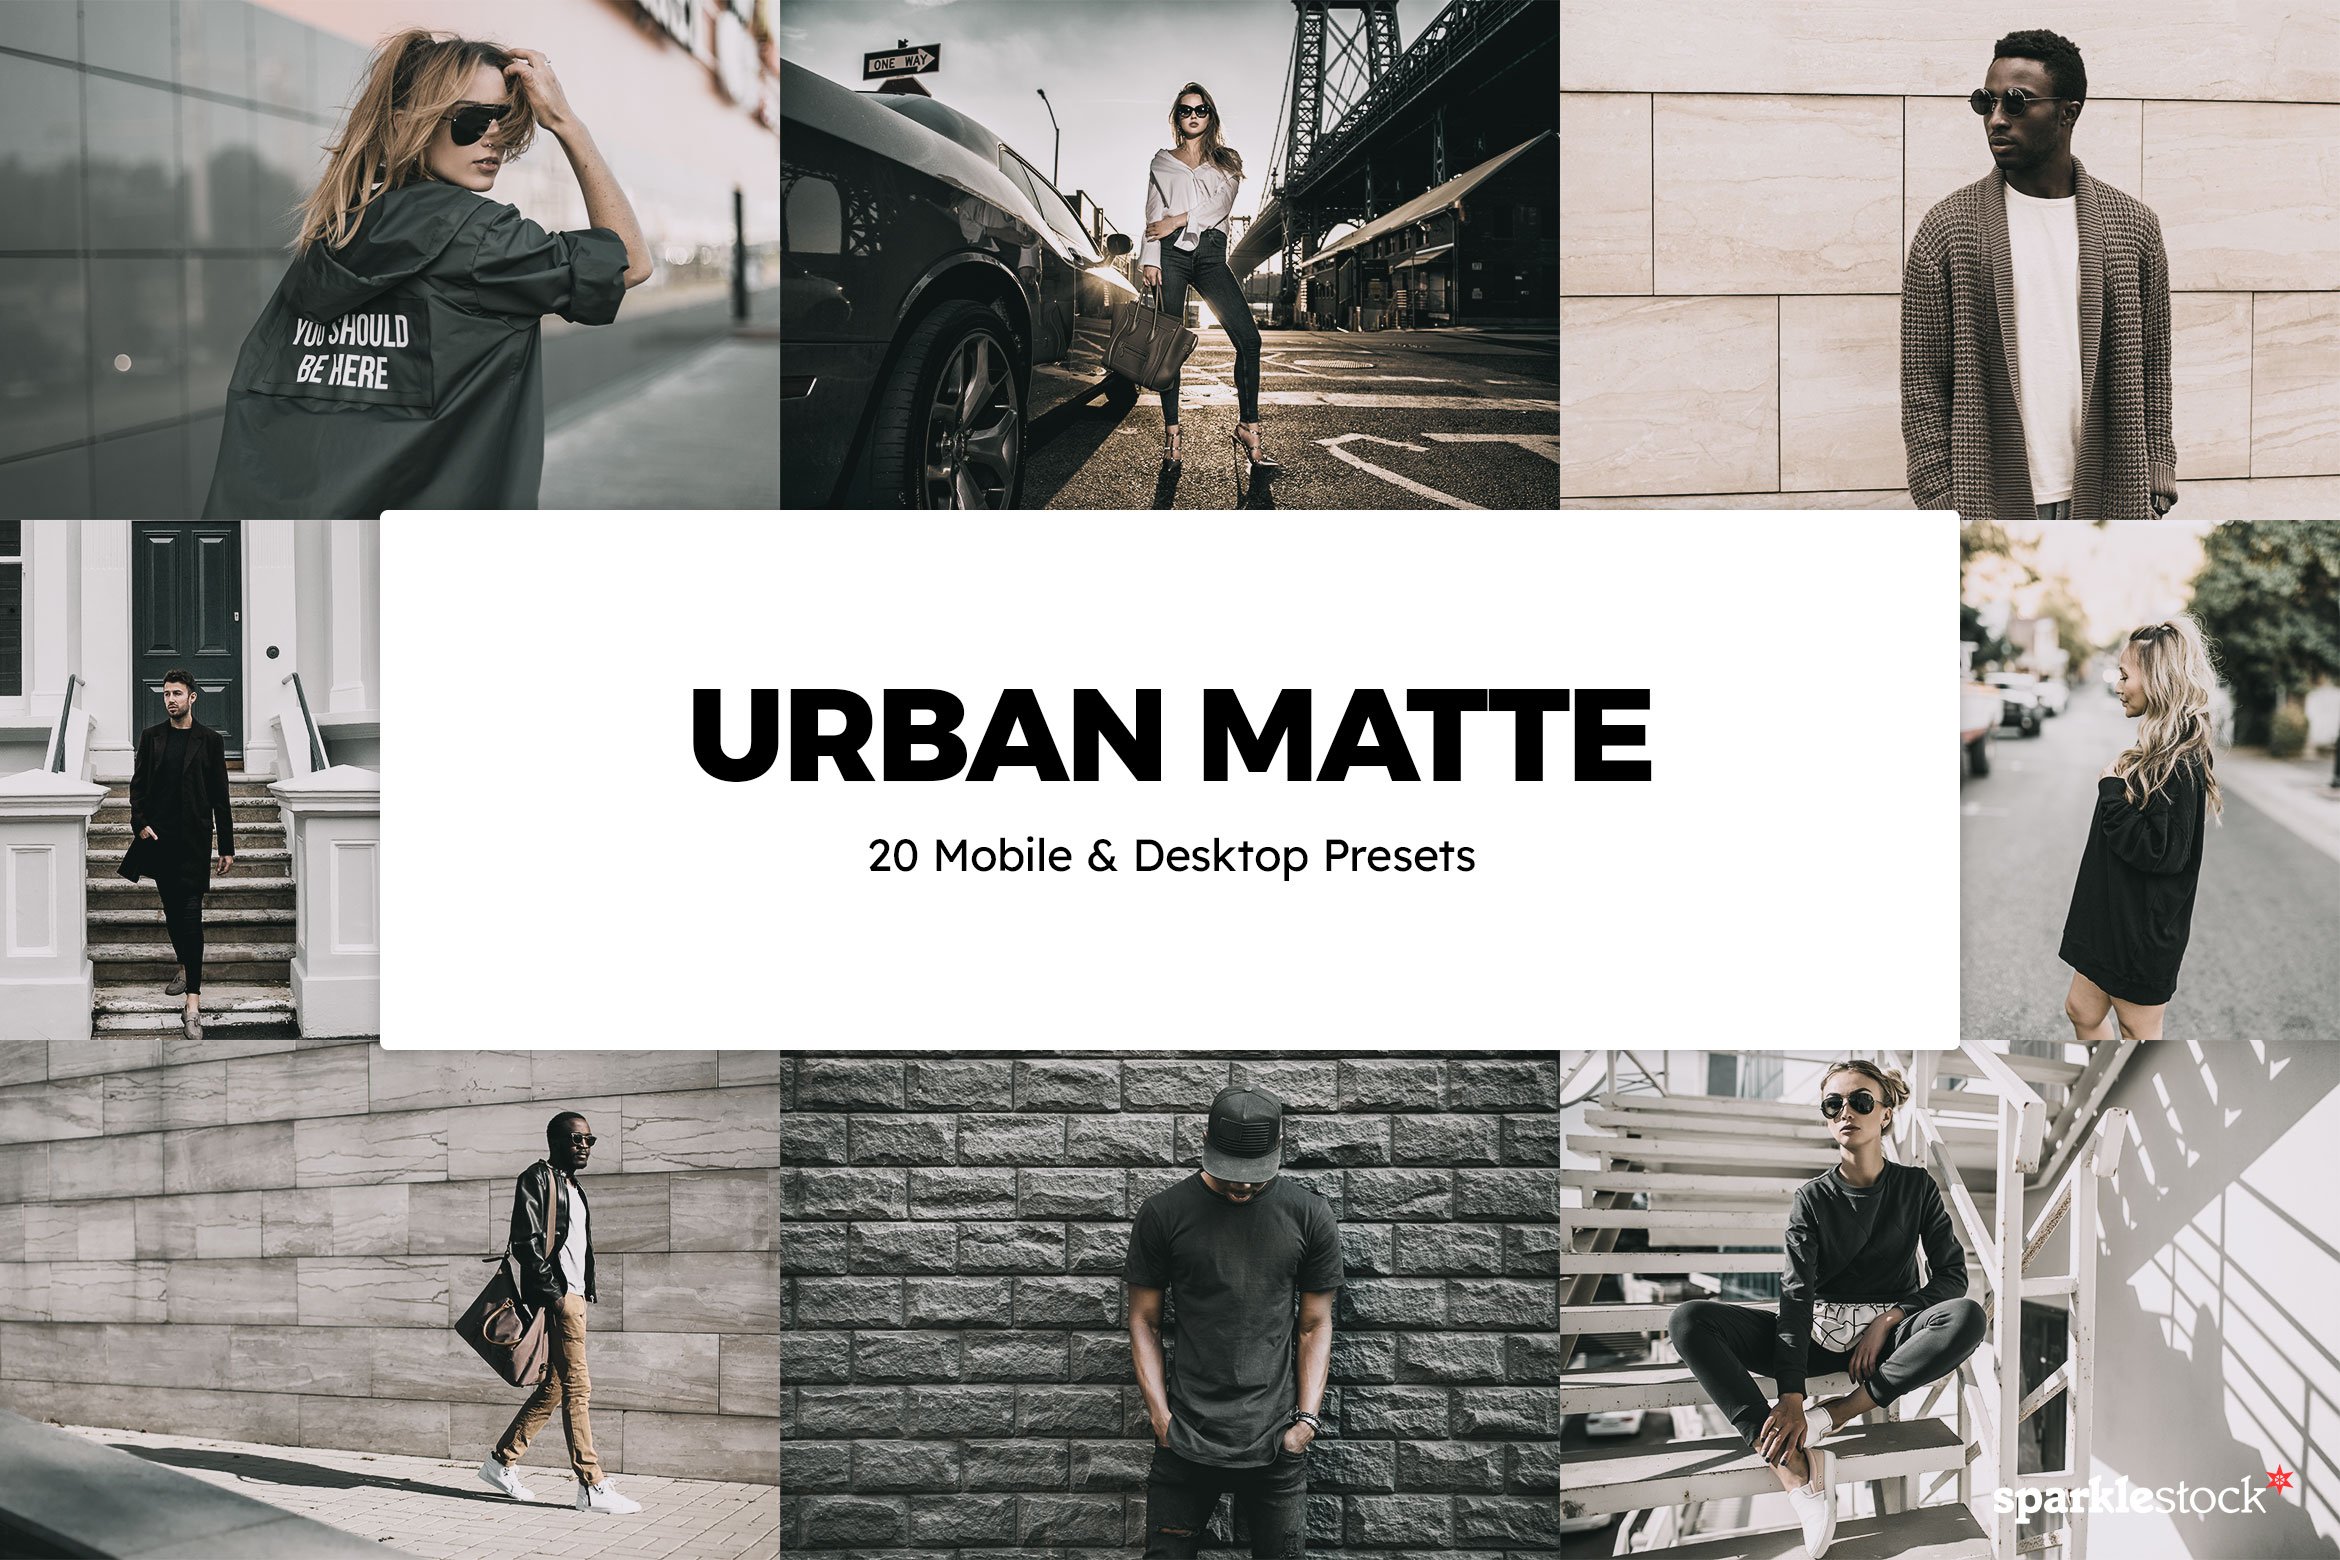 20 Urban Matte Lightroom Preset LUTscover image.